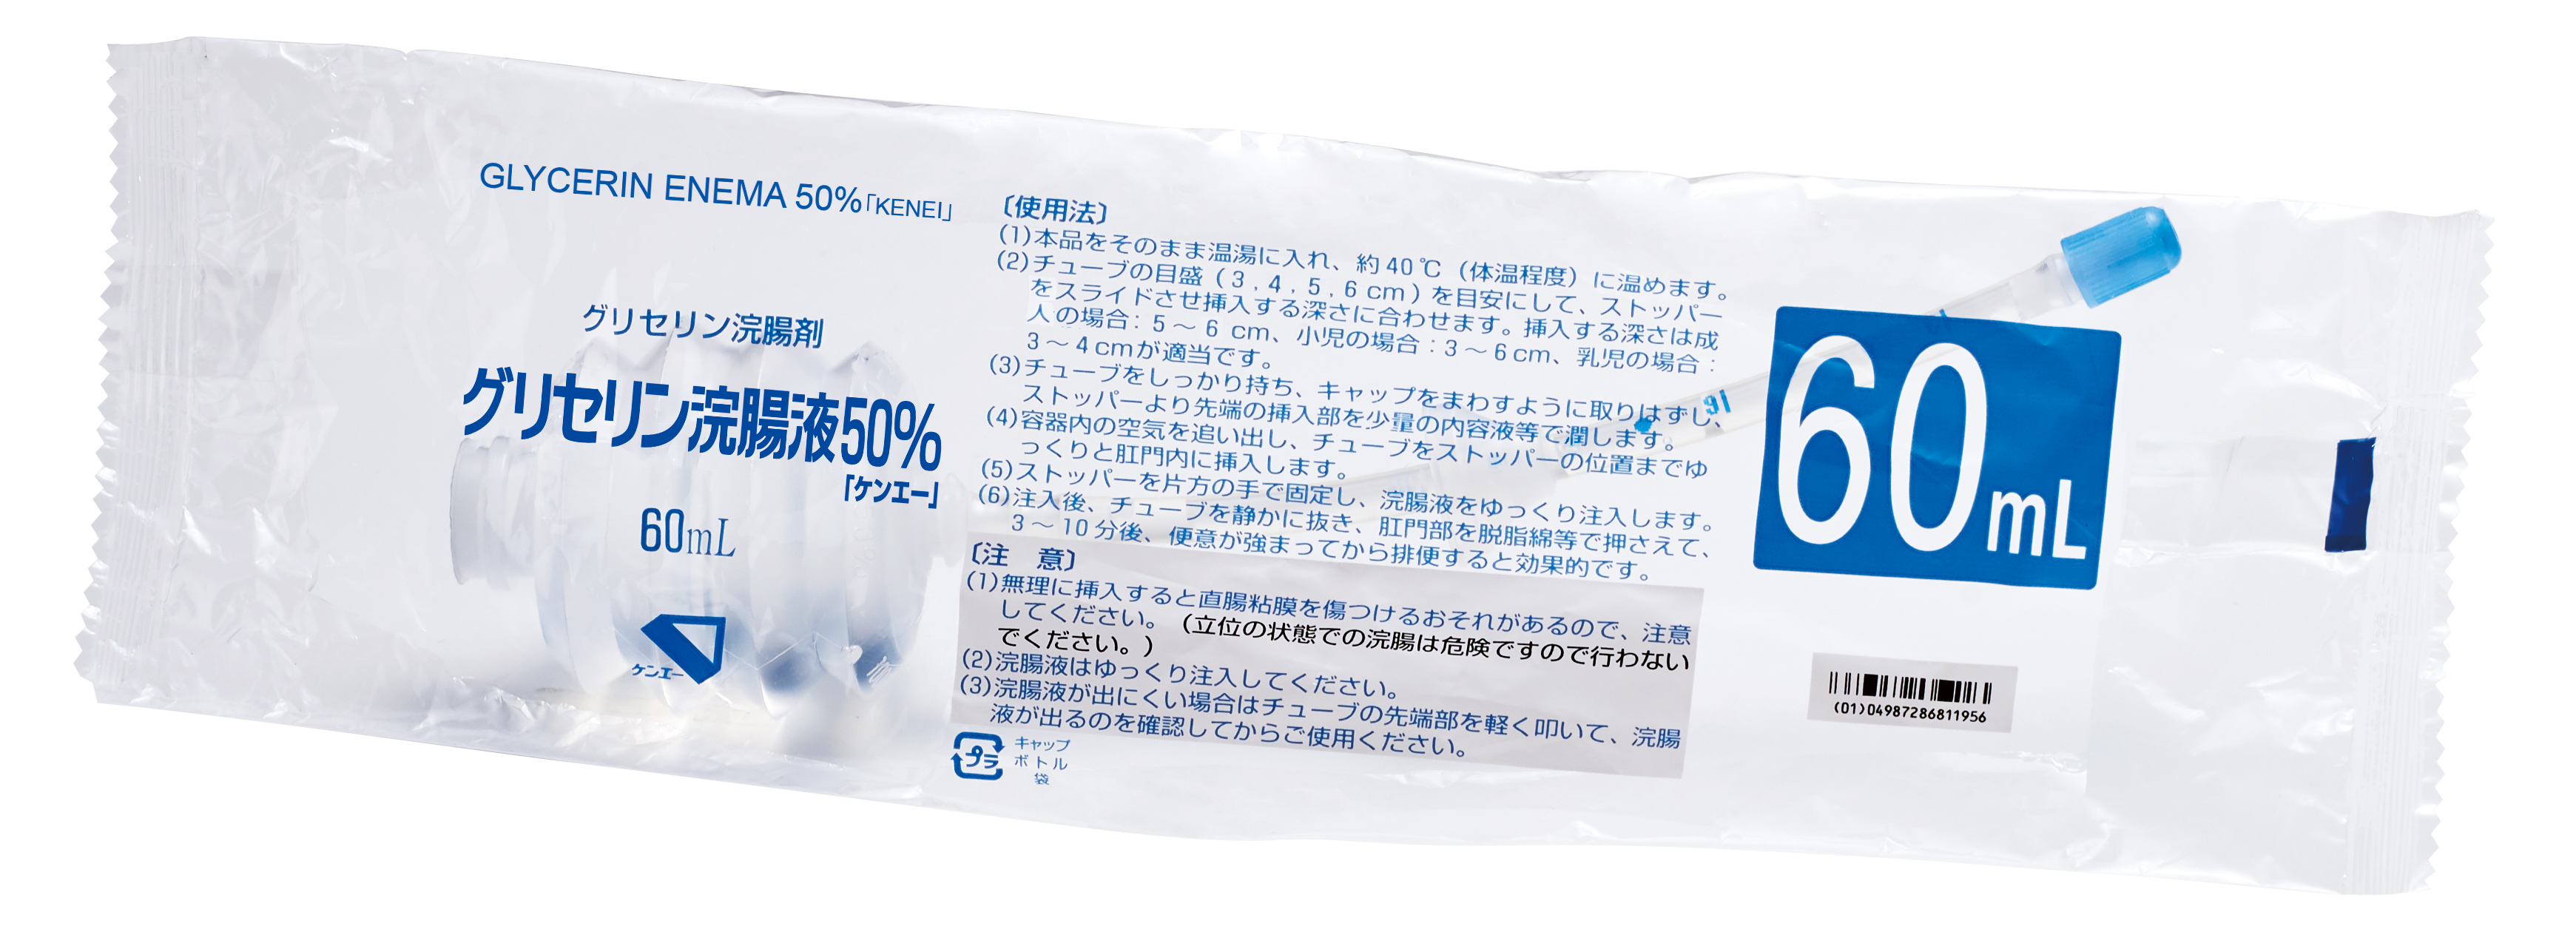 グリセリン浣腸液50％「ケンエー」[Lタイプ] | 健栄製薬株式会社